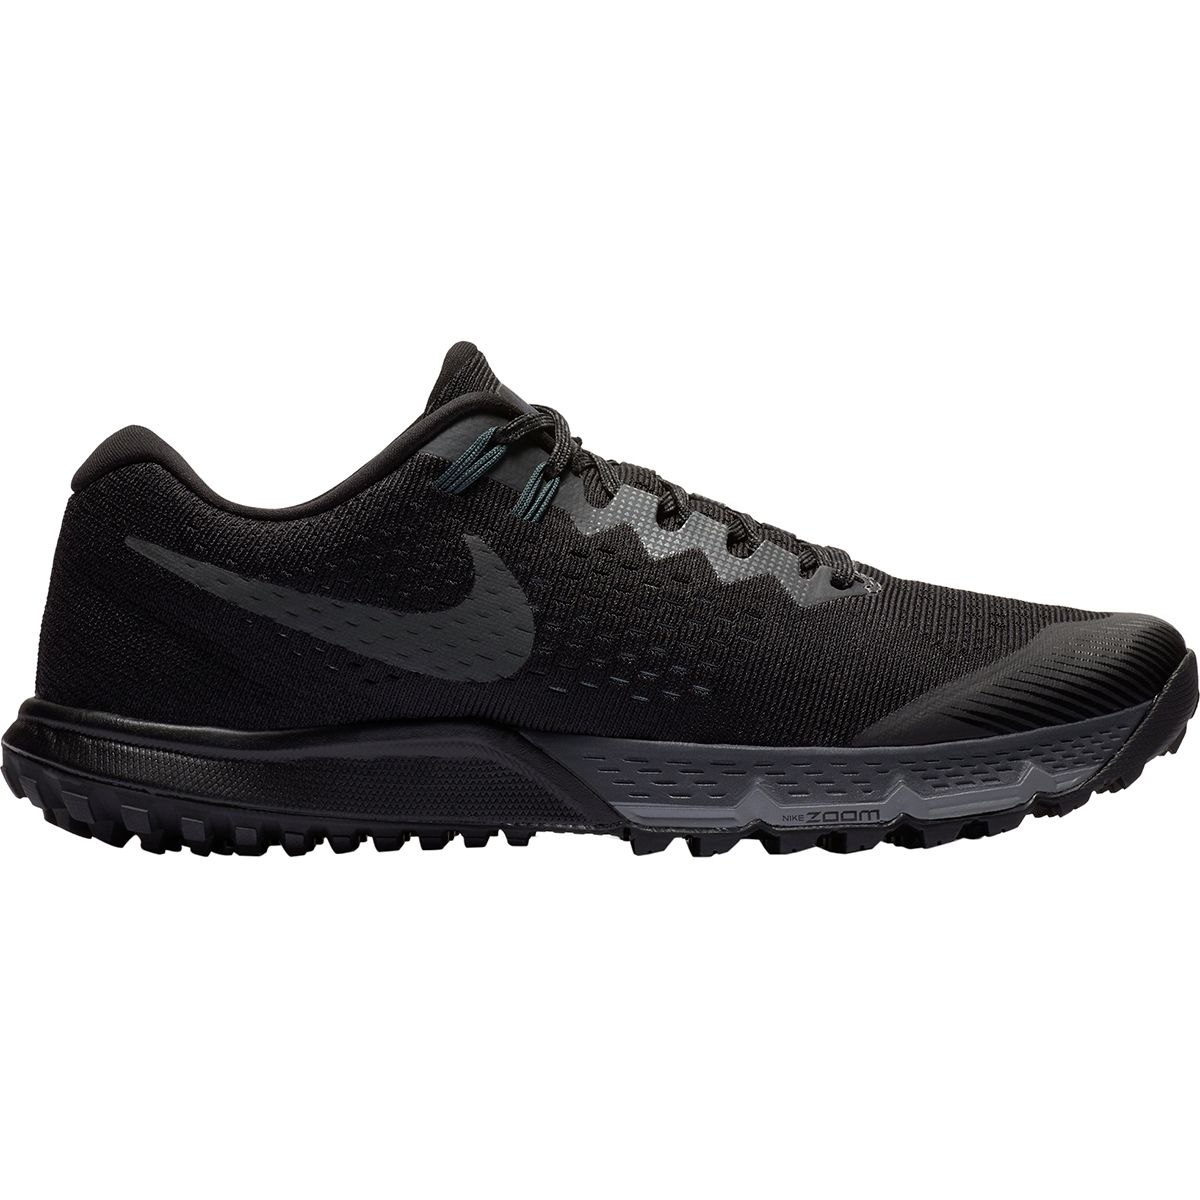 Nike Air Zoom Terra Kiger 4 Trail Running Shoe - Men's - Footwear